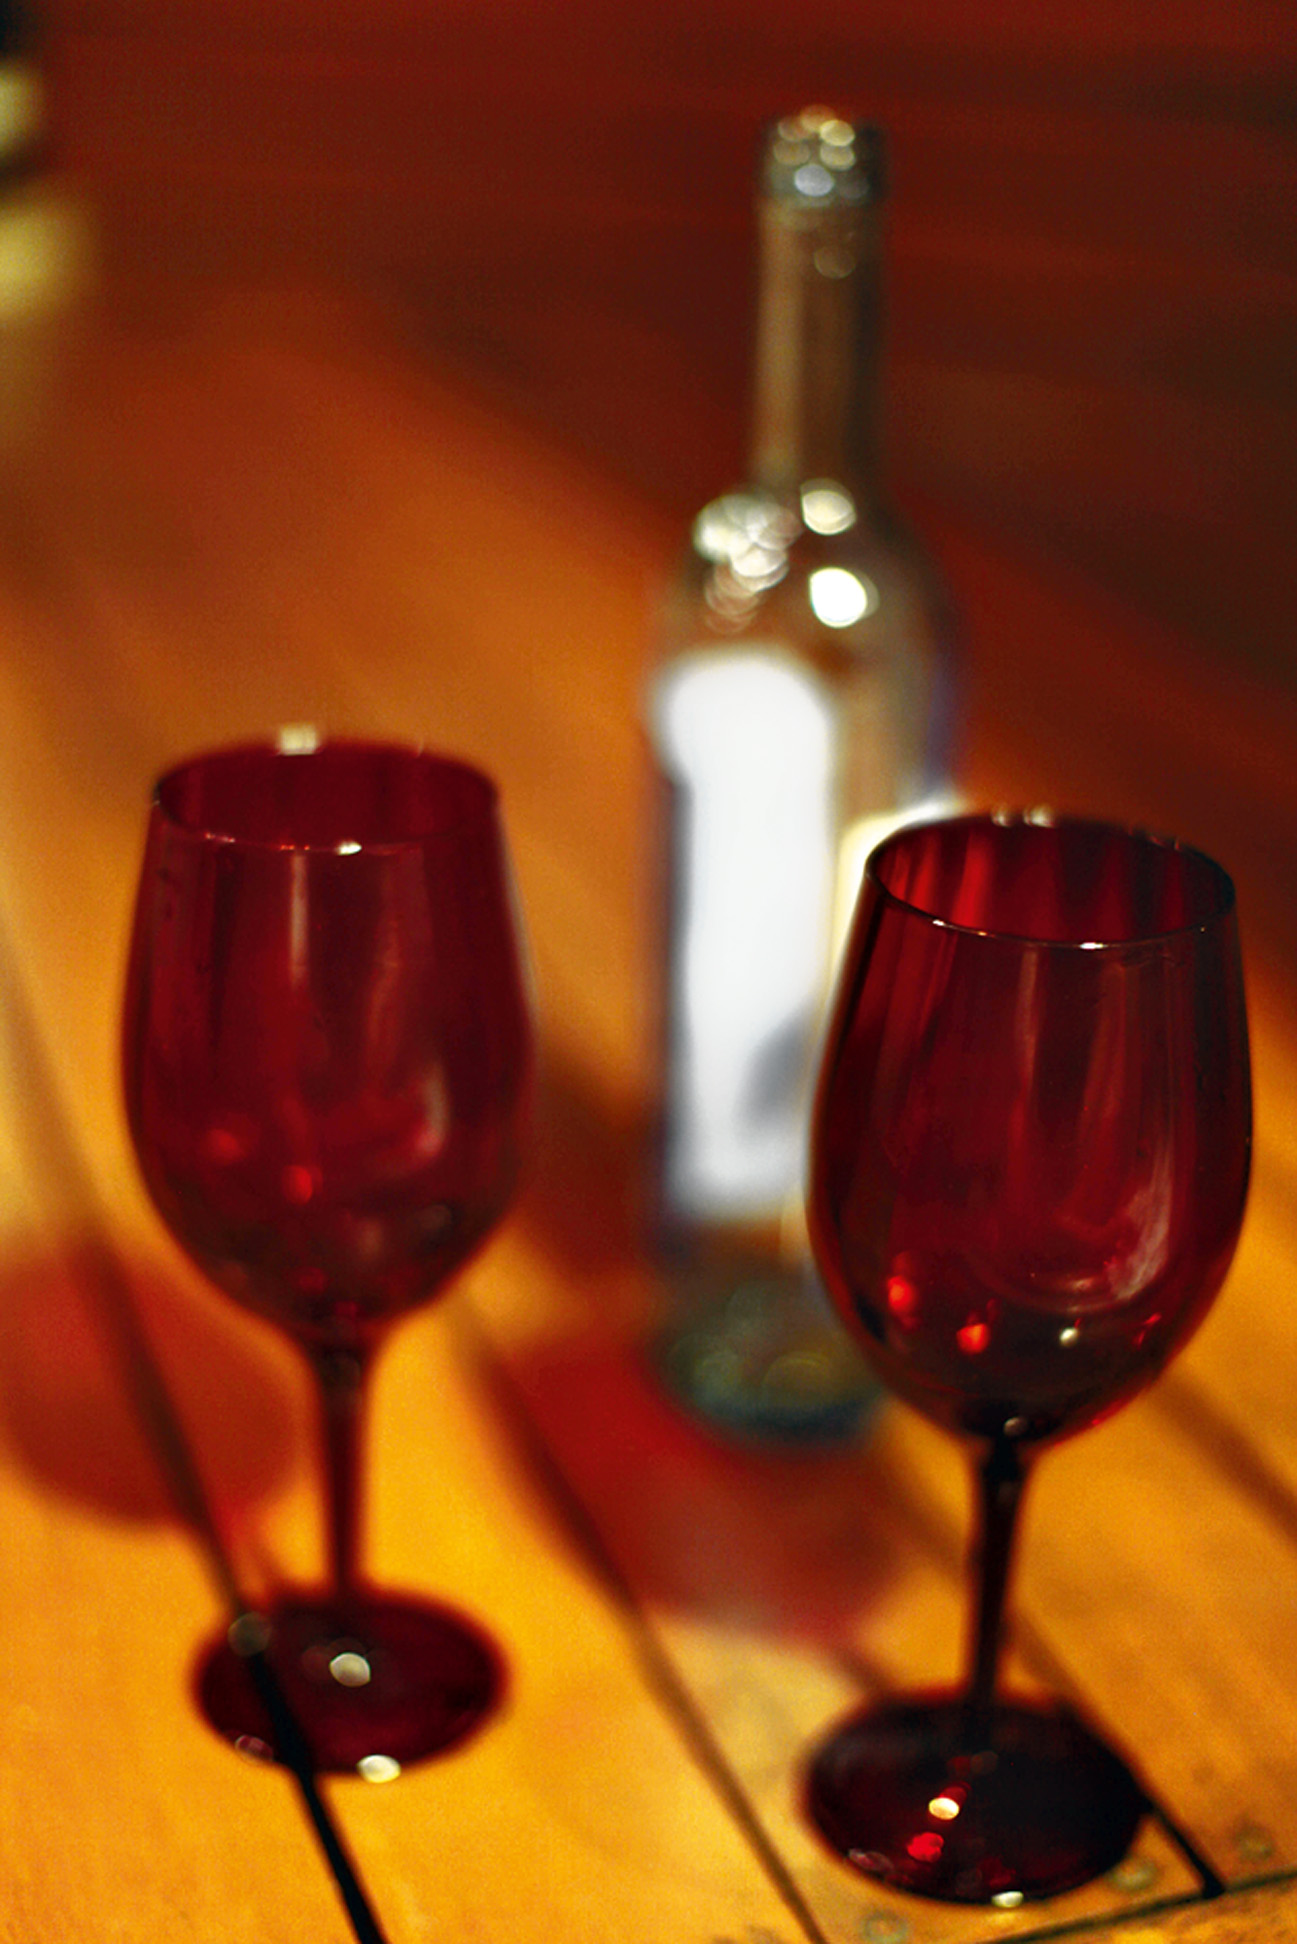 22:00 - “O dia fecha com um vinho ao lado do maridão. Hora de namorar e dormir.”